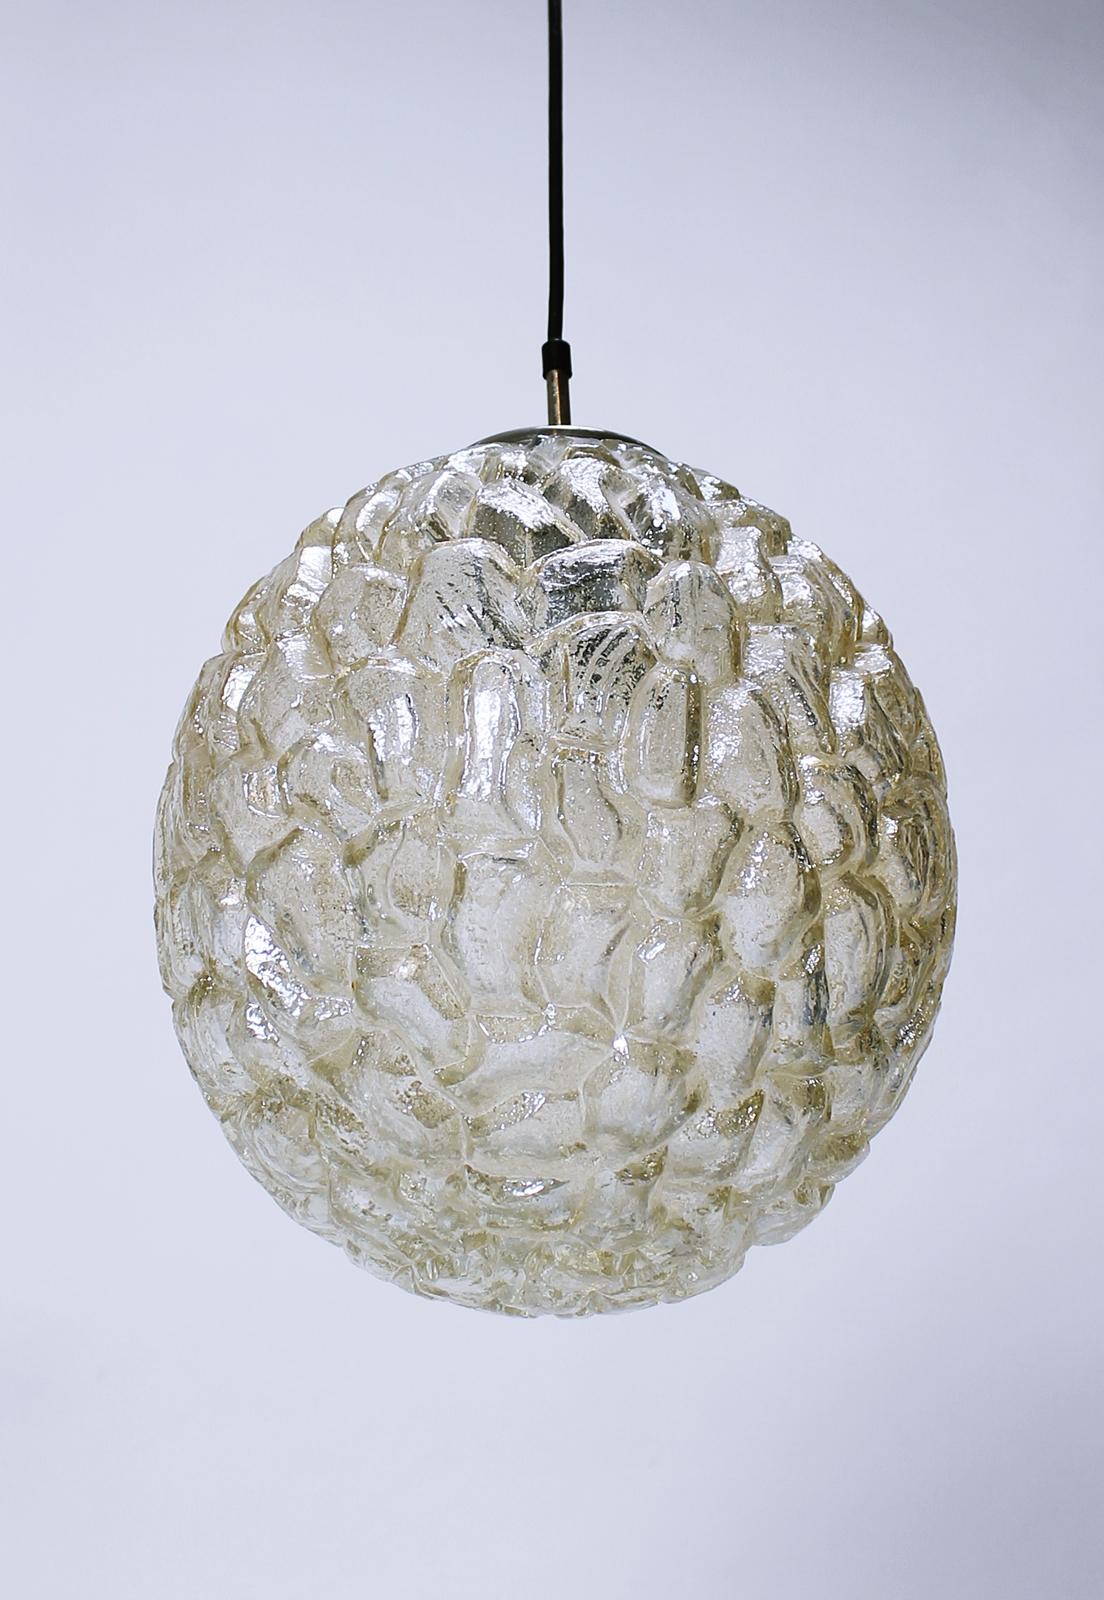 Eine schöne und große ovale Pendelleuchte von Glashütte Limburg, ca. 1970er Jahre. Mit ihrem wunderbar strukturierten, bernsteinfarbenen Glasschirm, der an Eiskristalle erinnert, leuchtet diese Vintage-Lampe aus der Jahrhundertmitte wunderschön und